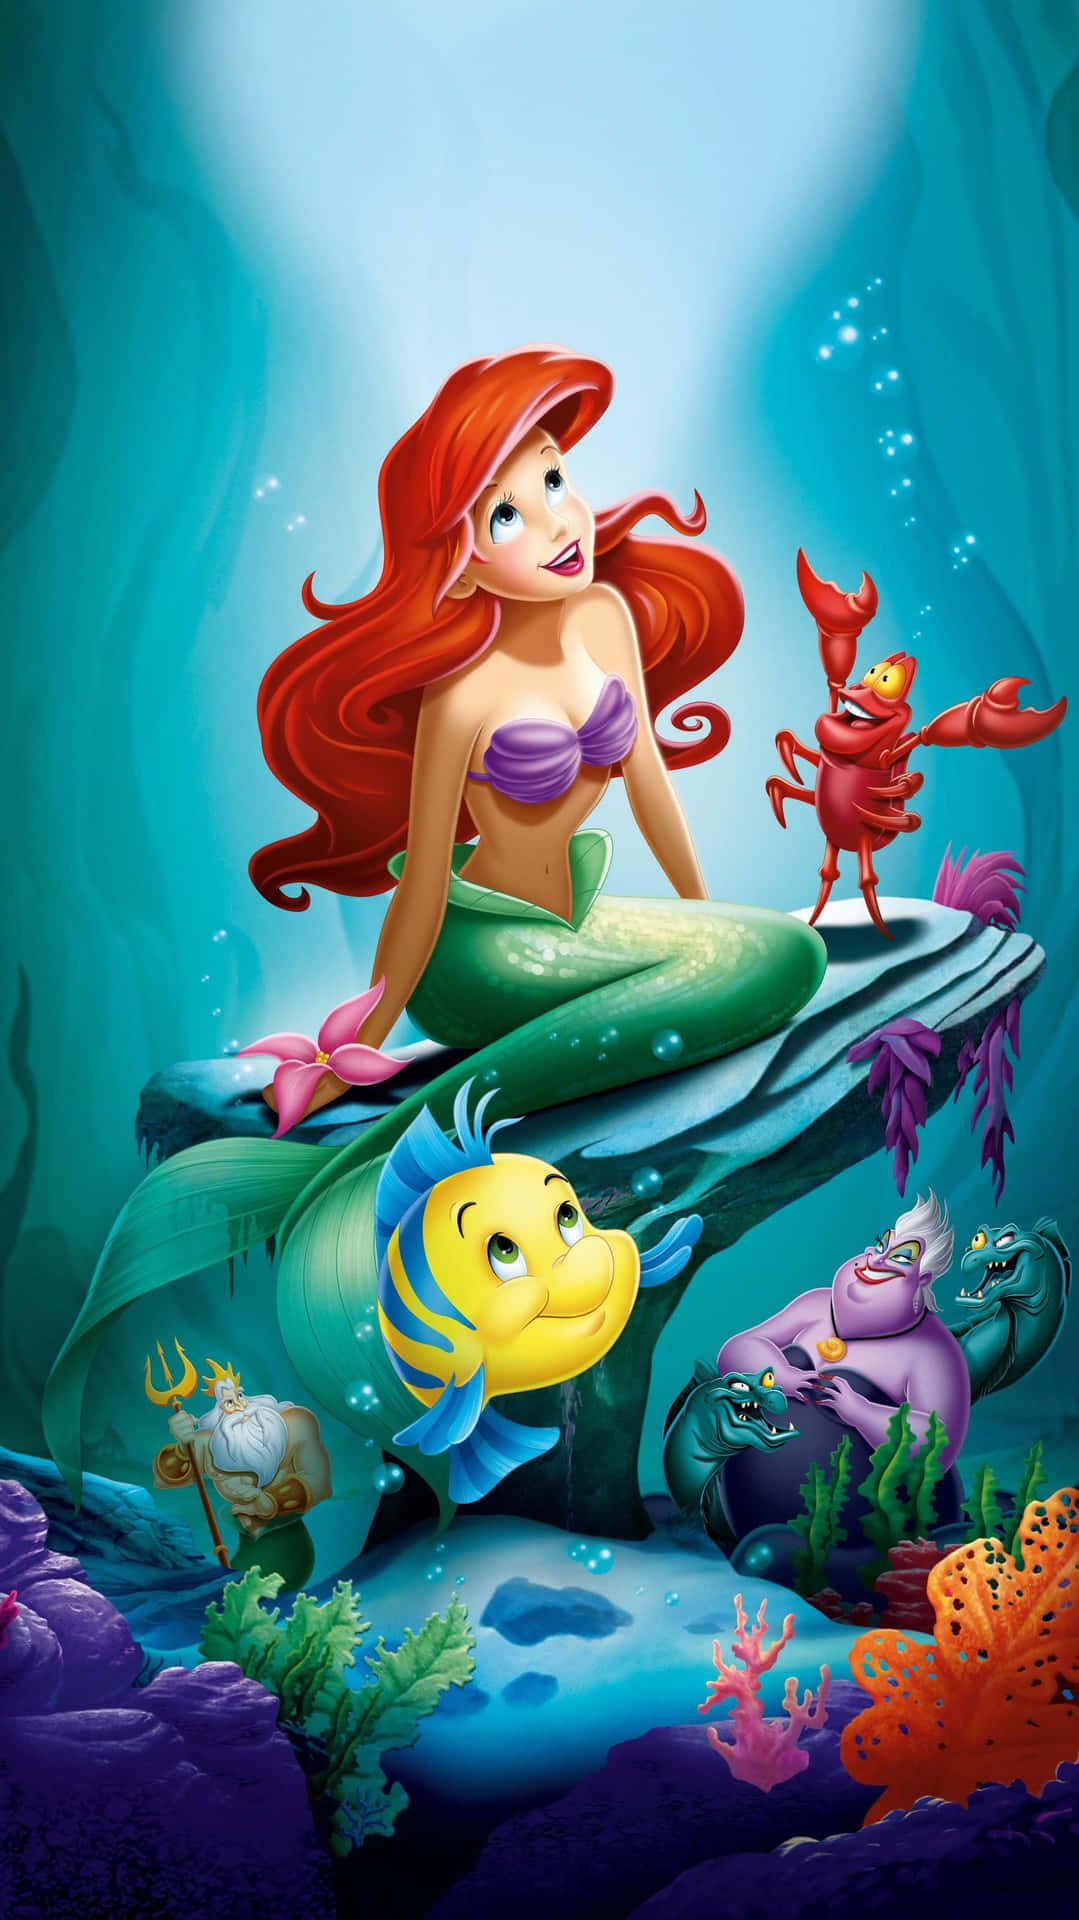 Ariel synger sammen i det levende underjordiske verden af Den lille havfrue. Wallpaper